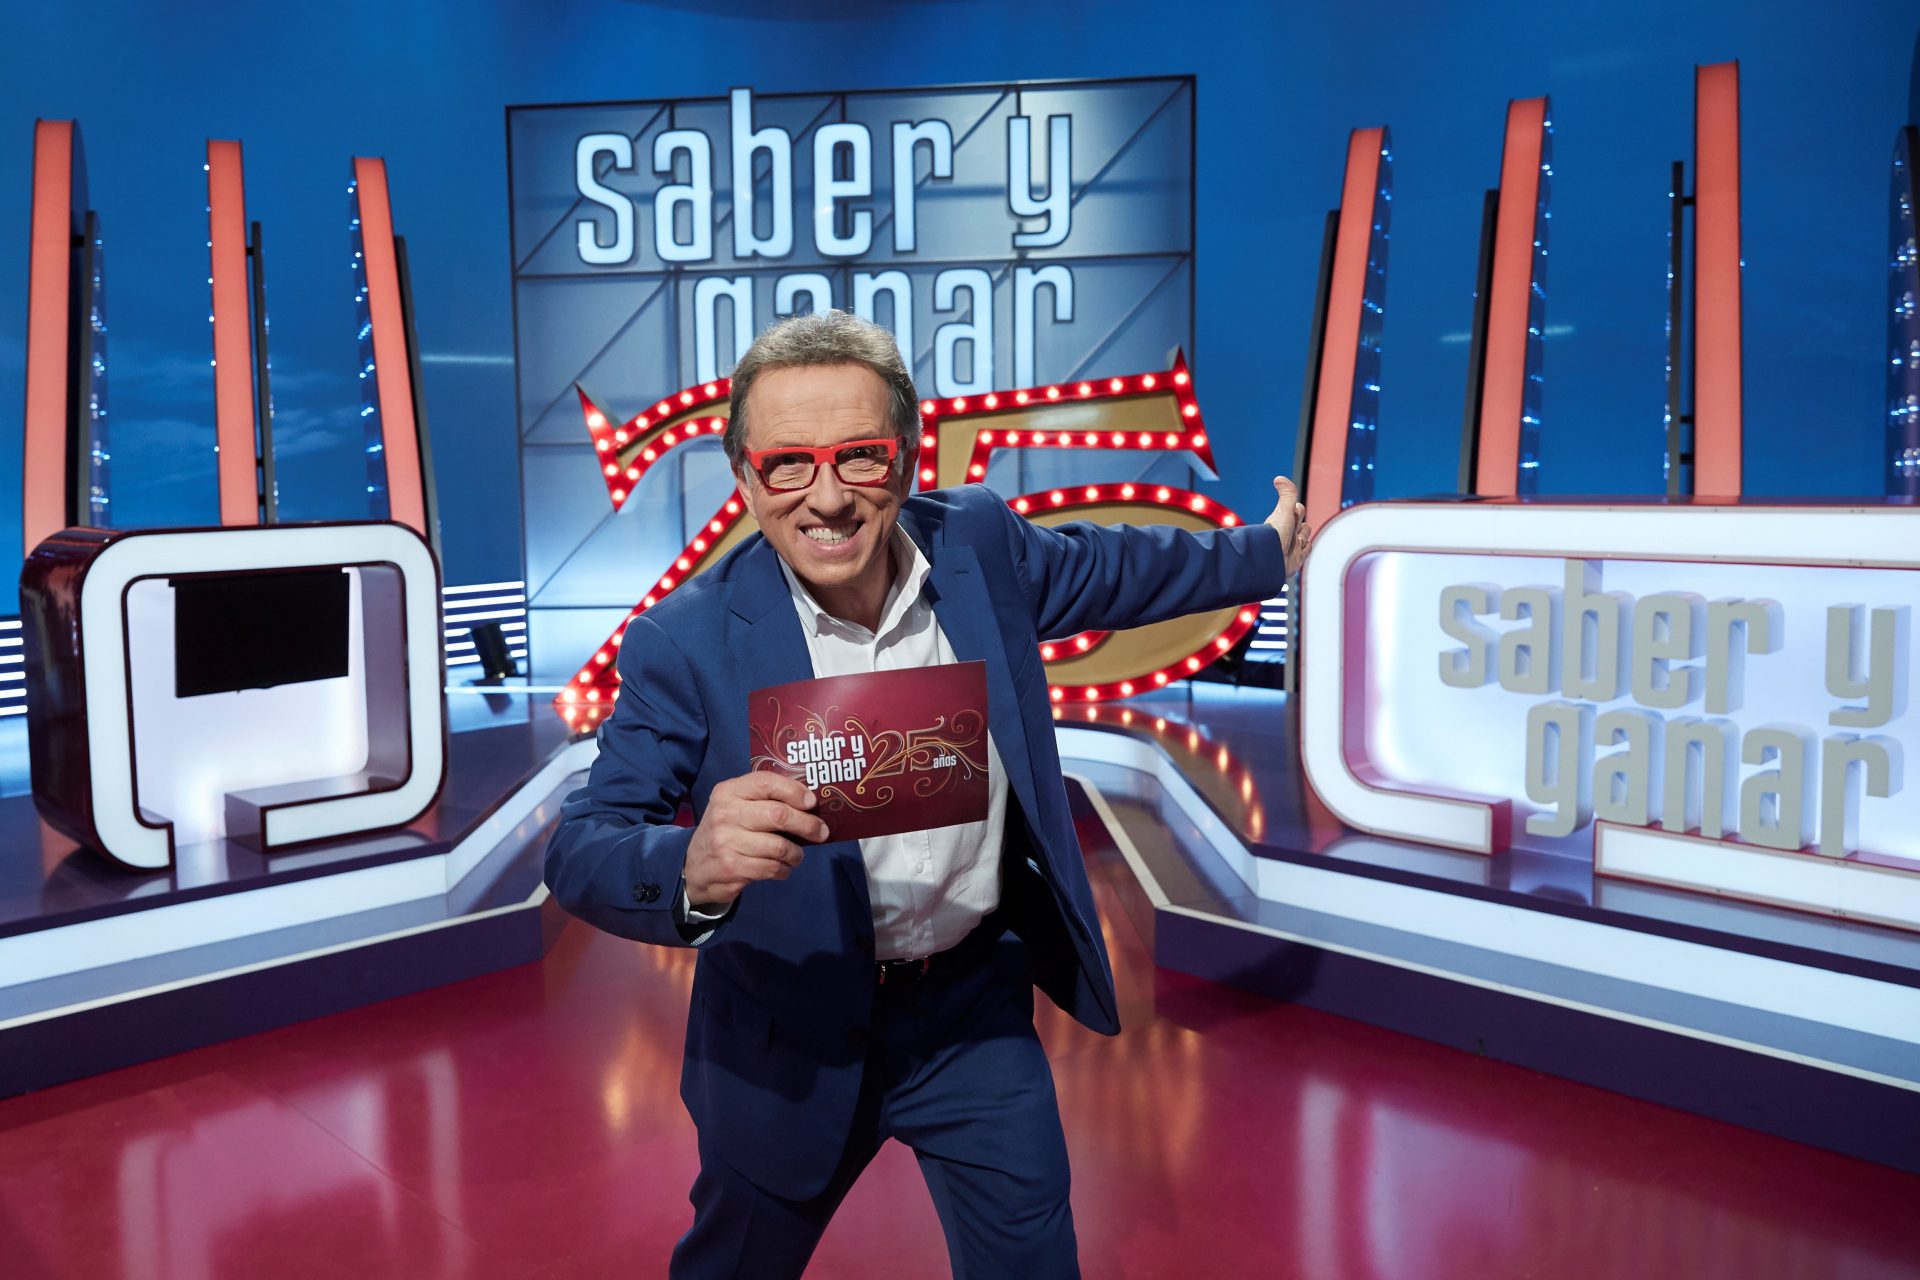 Jordi Hurtado en el plató de "Saber y ganar", programa que ha ganado el ondas a Mejor programa de entretenimiento..